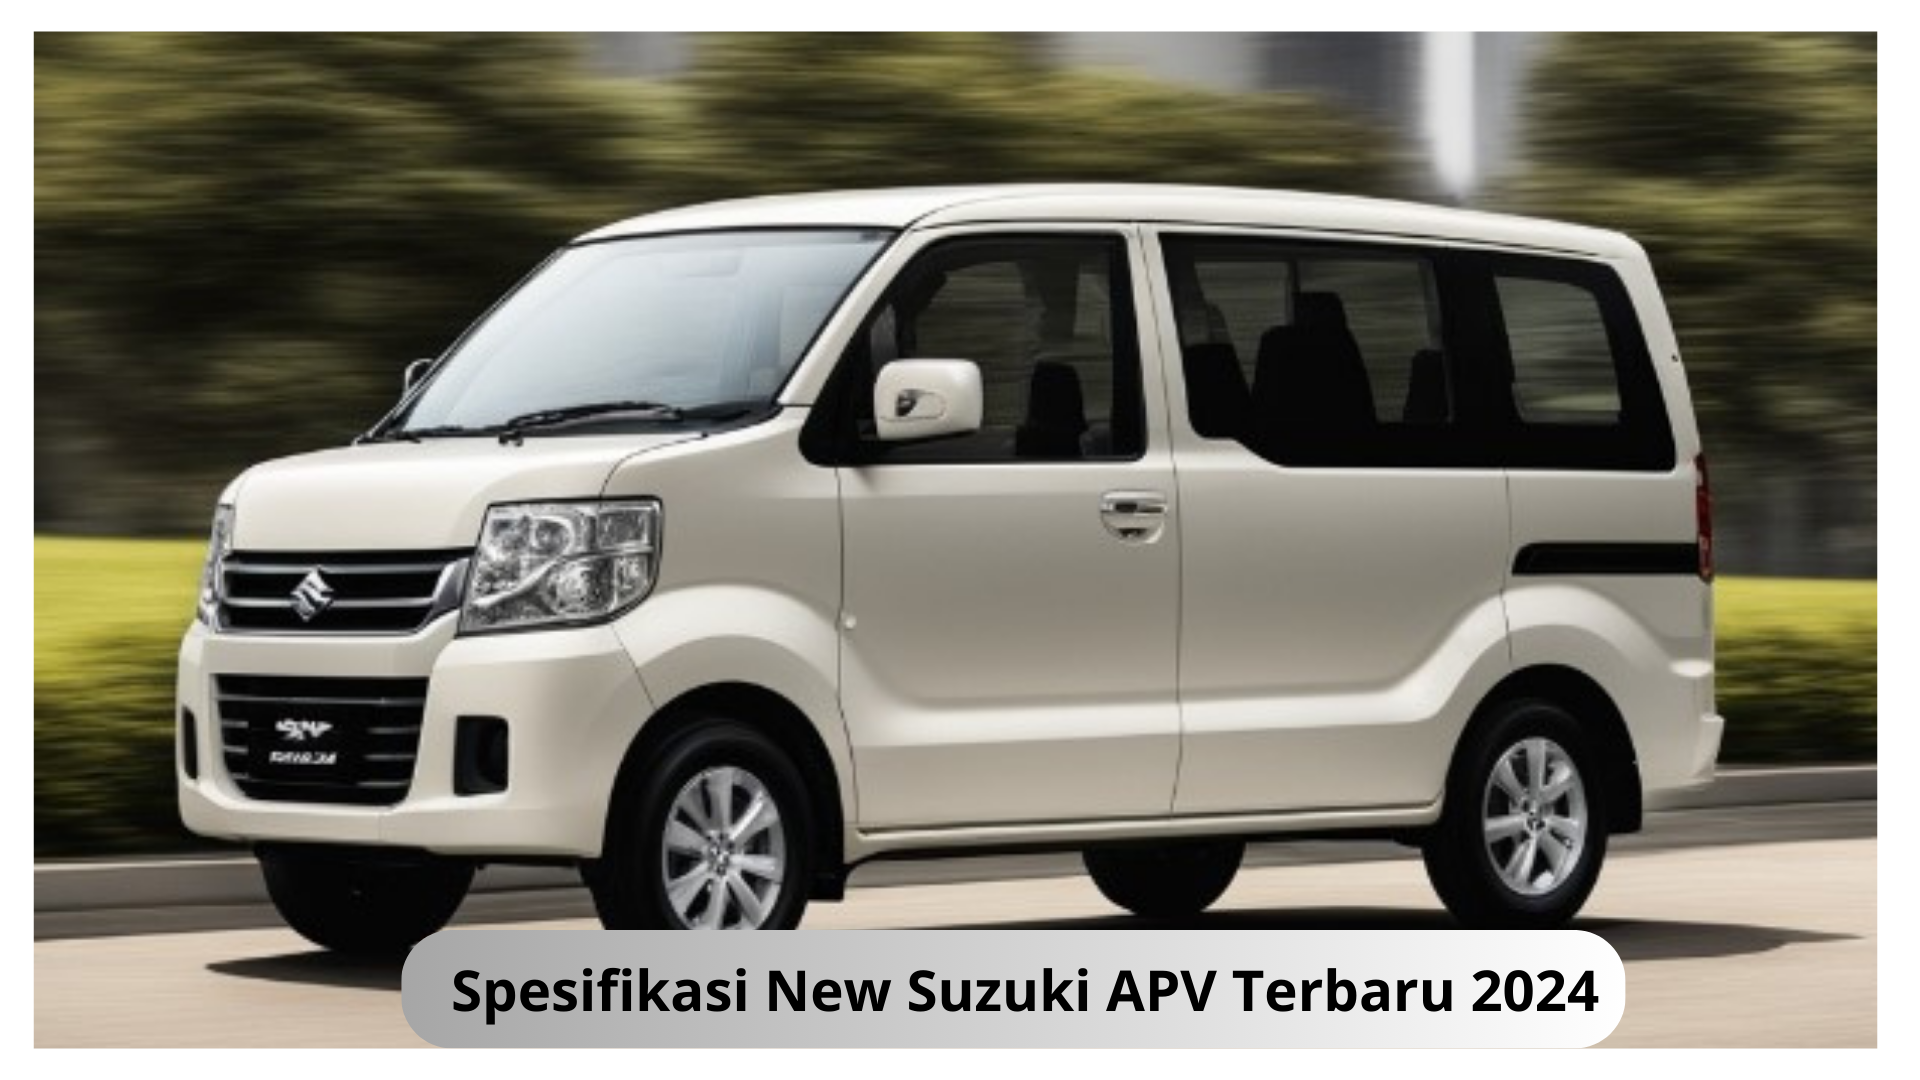 Kabin New Suzuki APV terbaru 2024 Lebih Lega, Muat 9 Penumpang Masih Stabil